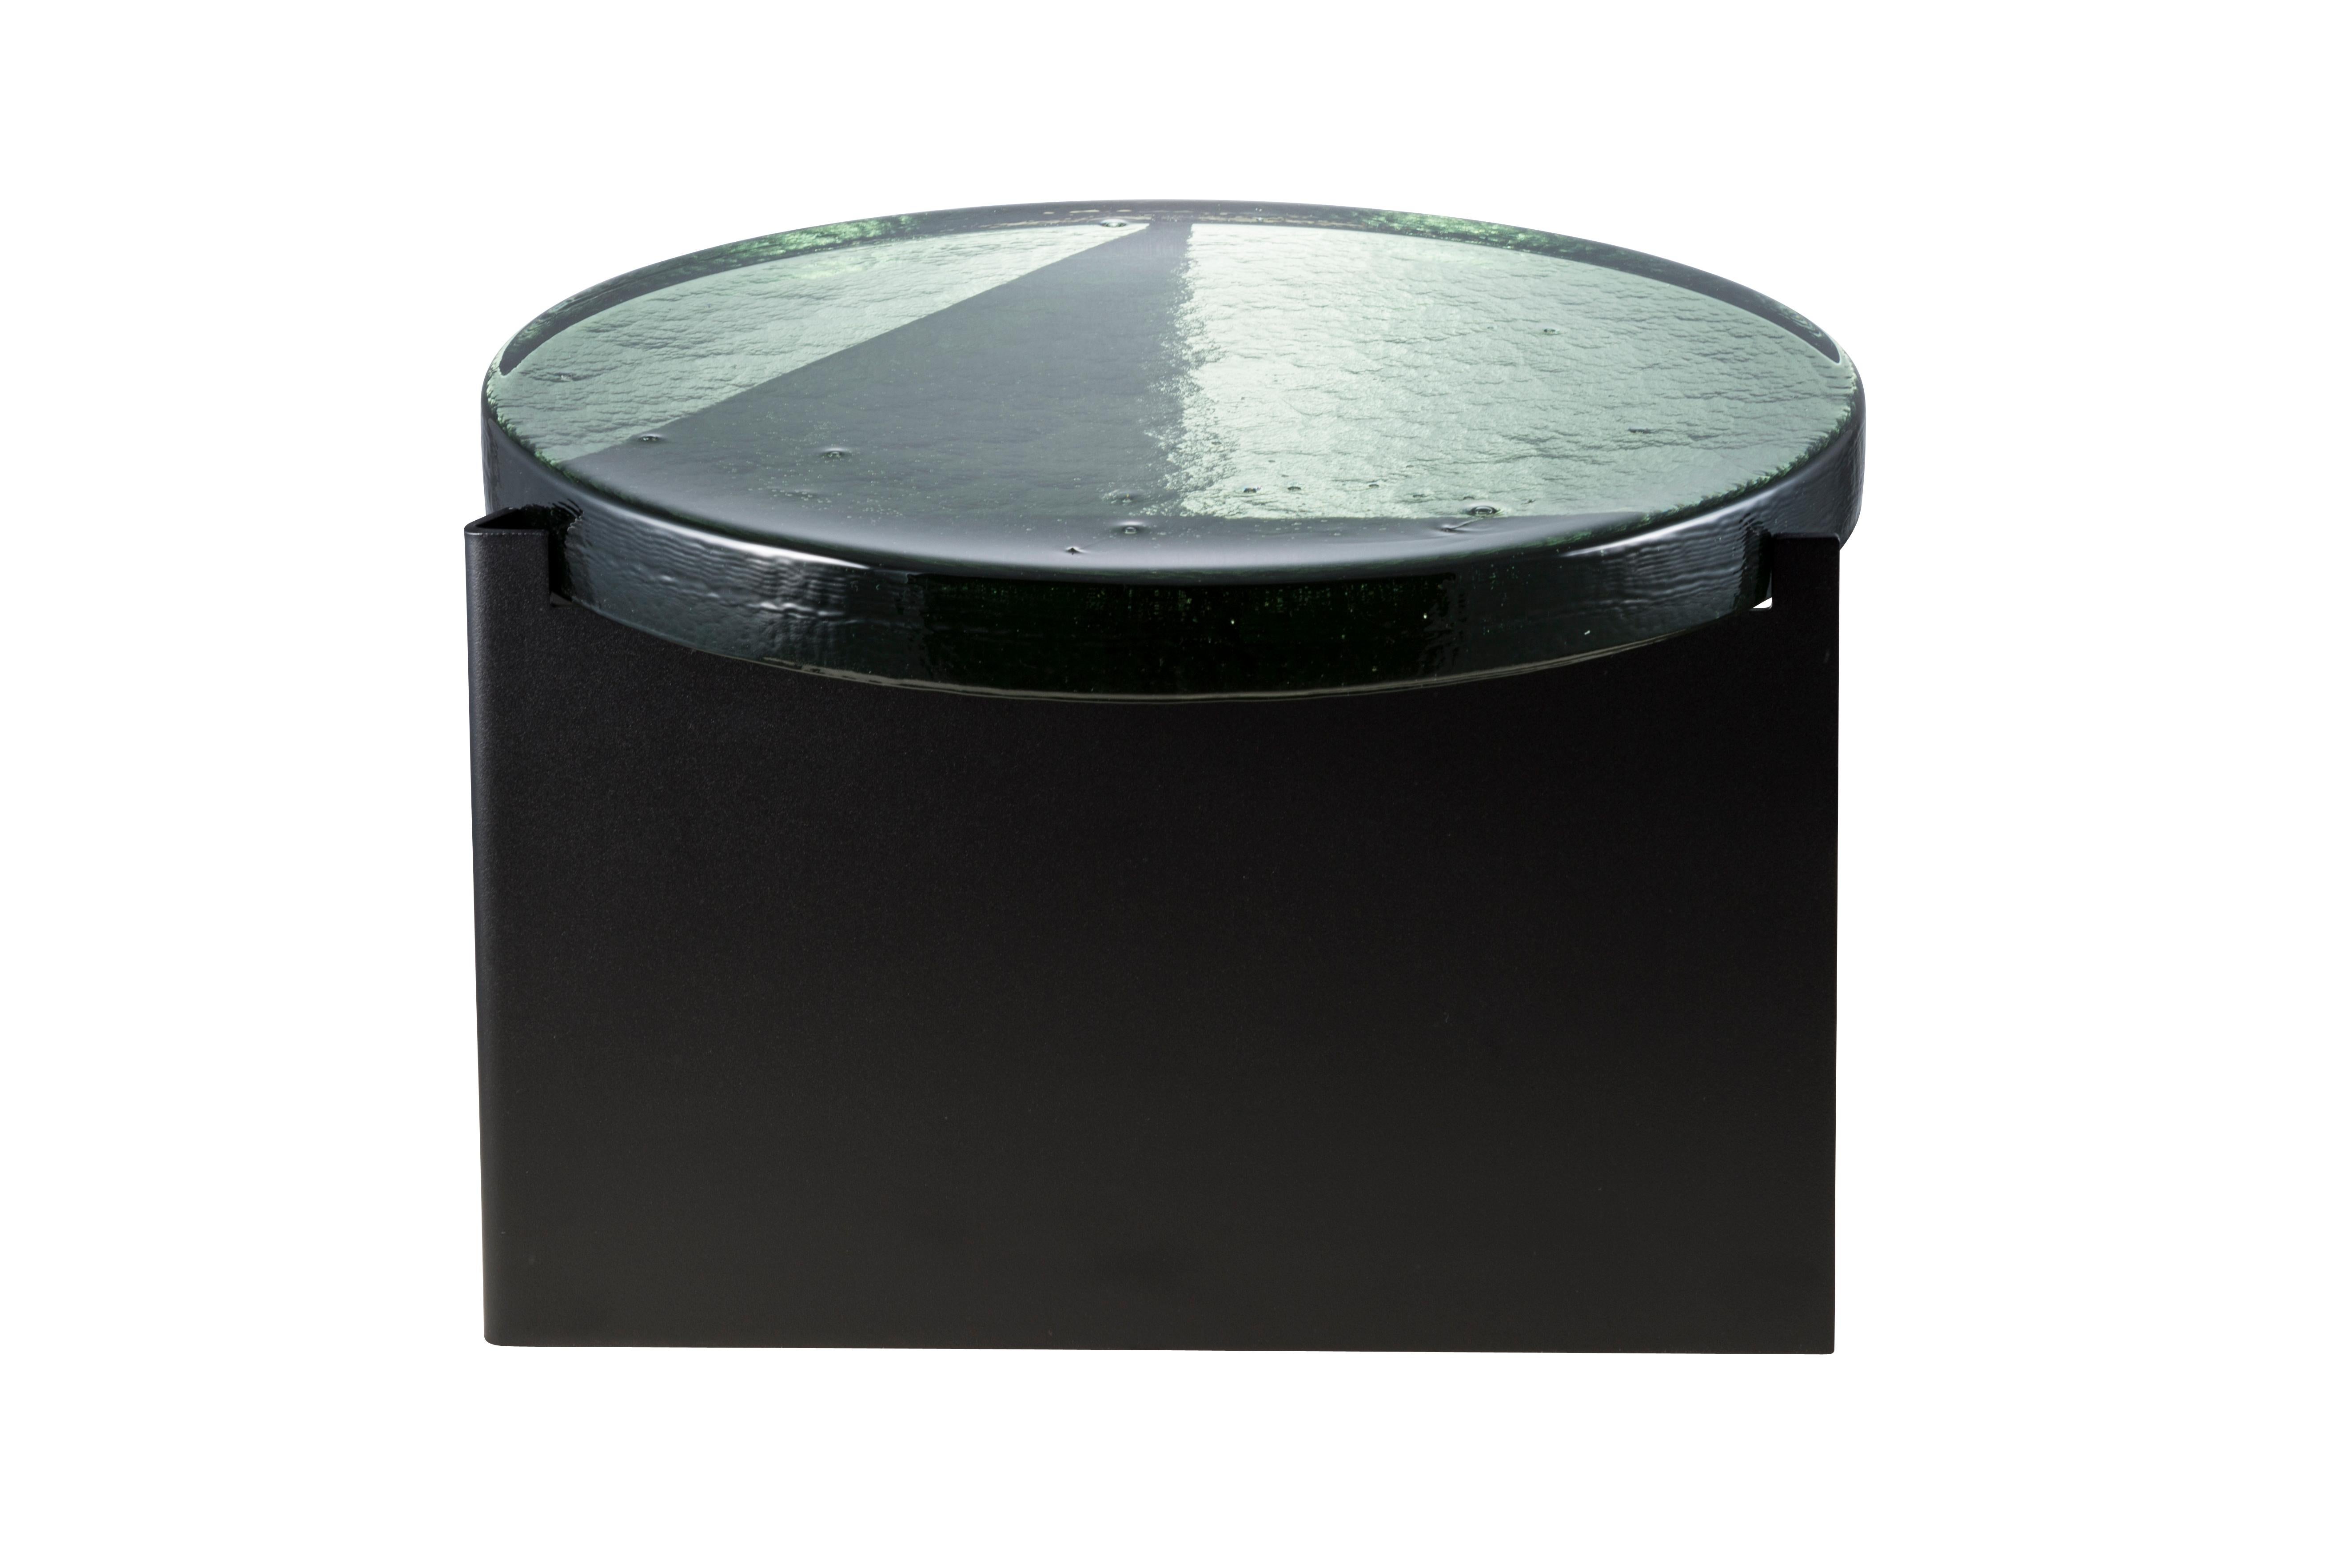 Table basse Alwa one big green black par Pulpo.
Dimensions : D56 x H35 cm.
MATERIAL : verre coulé ; acier revêtu de poudre. 

Disponible également en différentes finitions.

Normalement, le verre est considéré comme un matériau léger aux